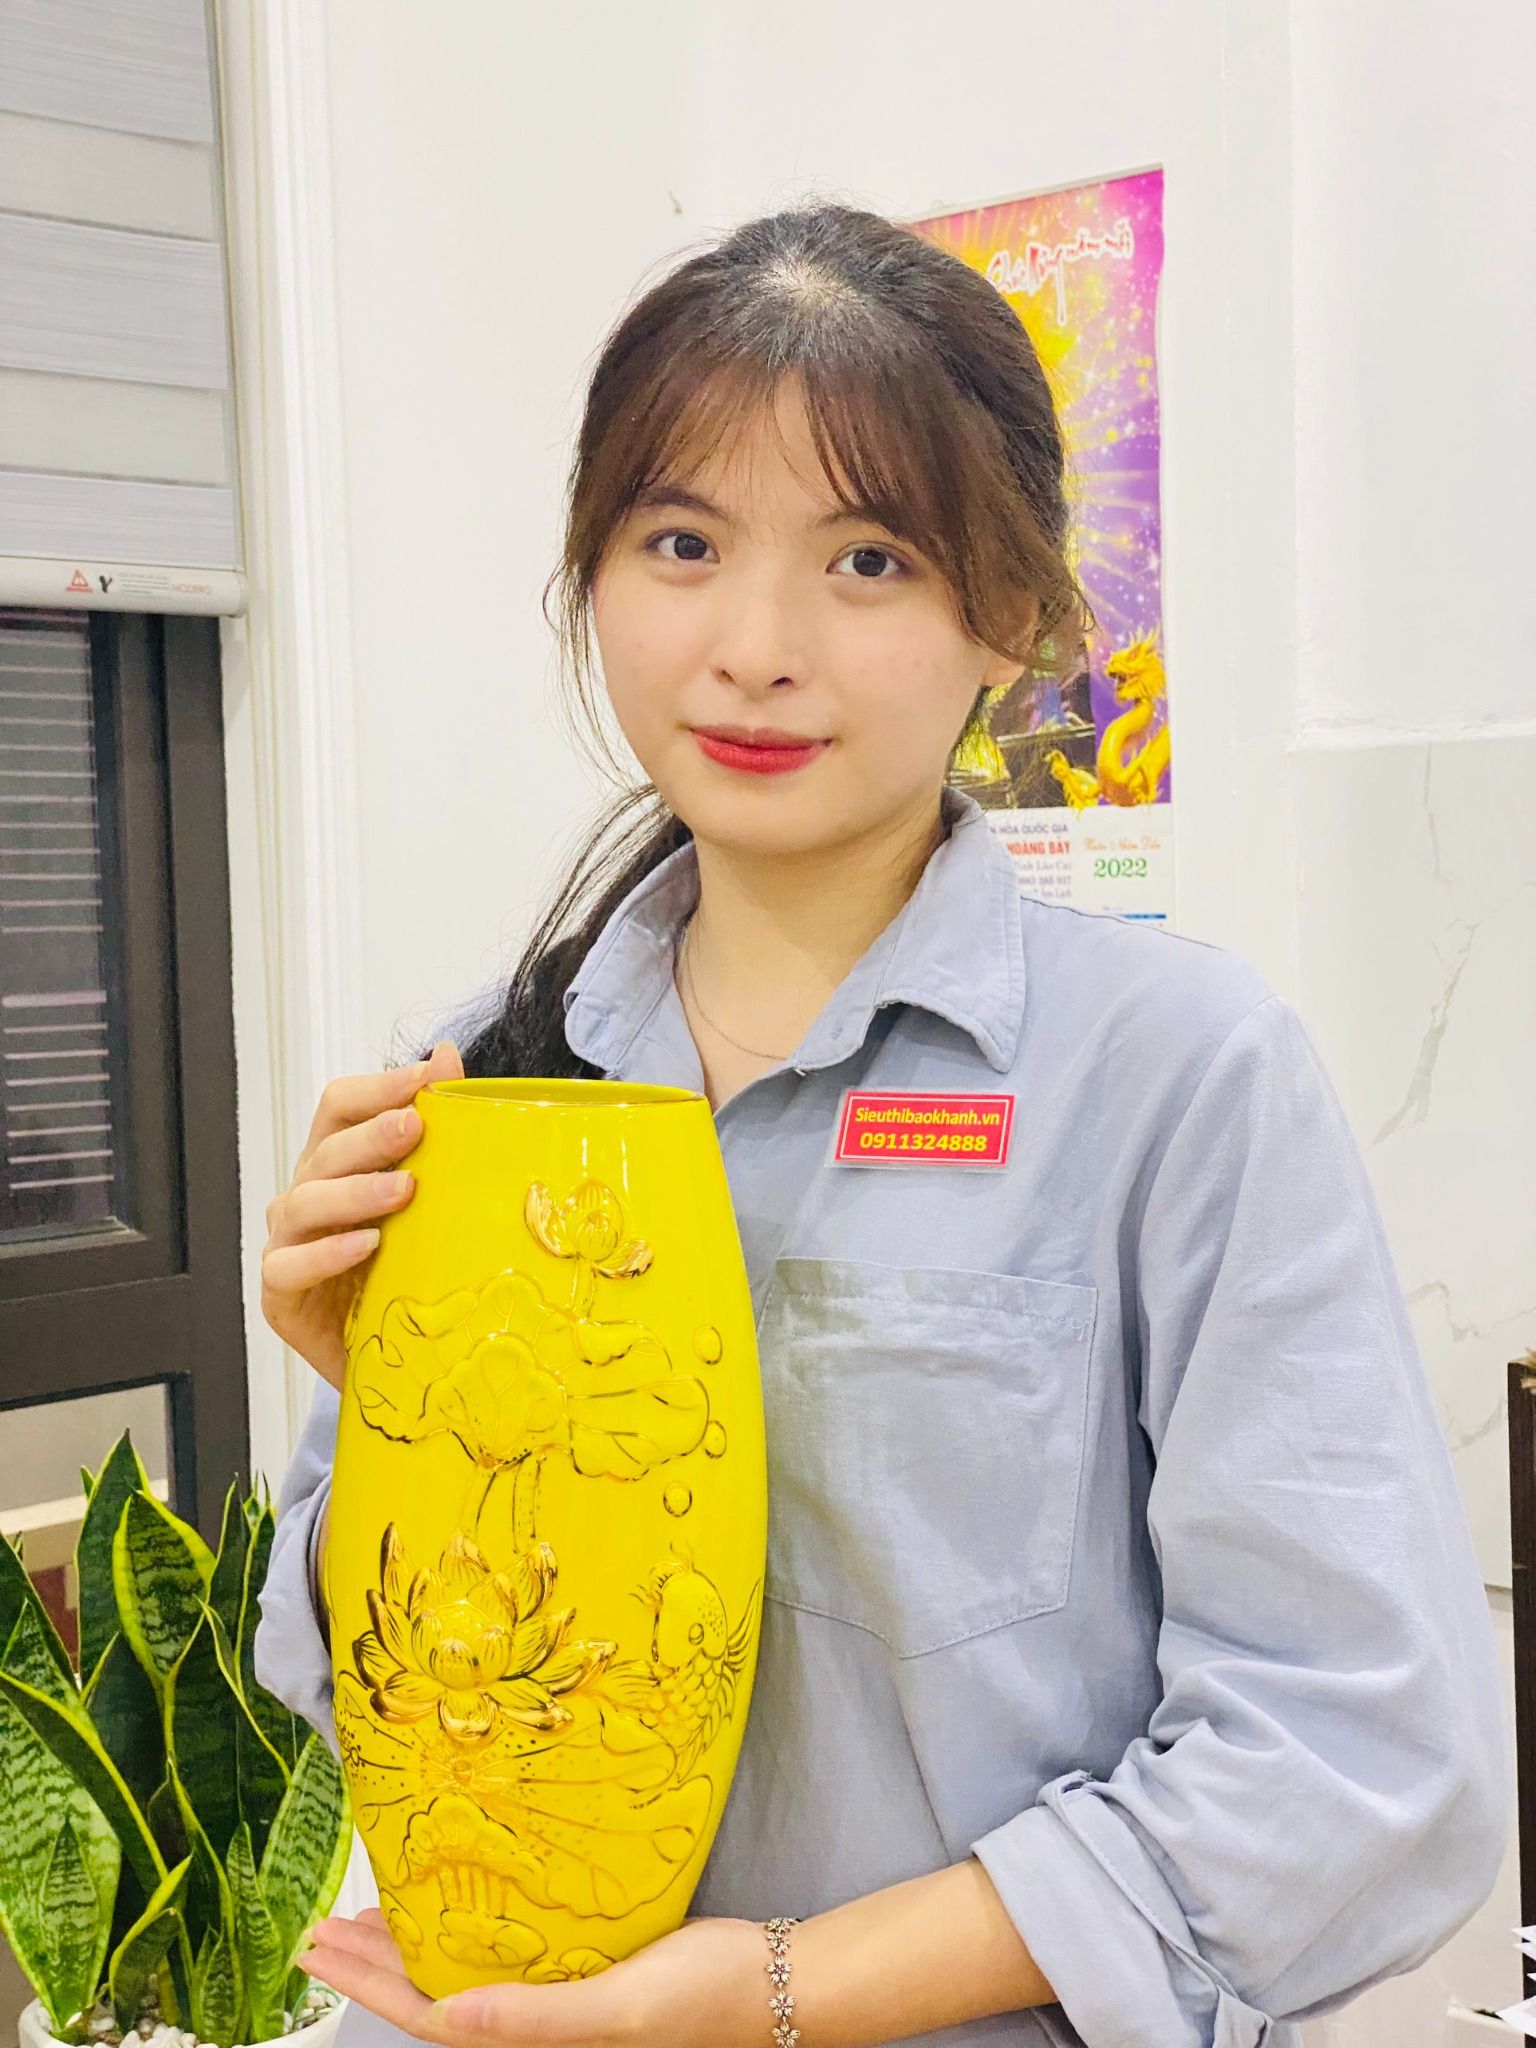  Bình hoa phong thủy sơn vàng Lí Ngư Vọng Nguyệt cao cấp 